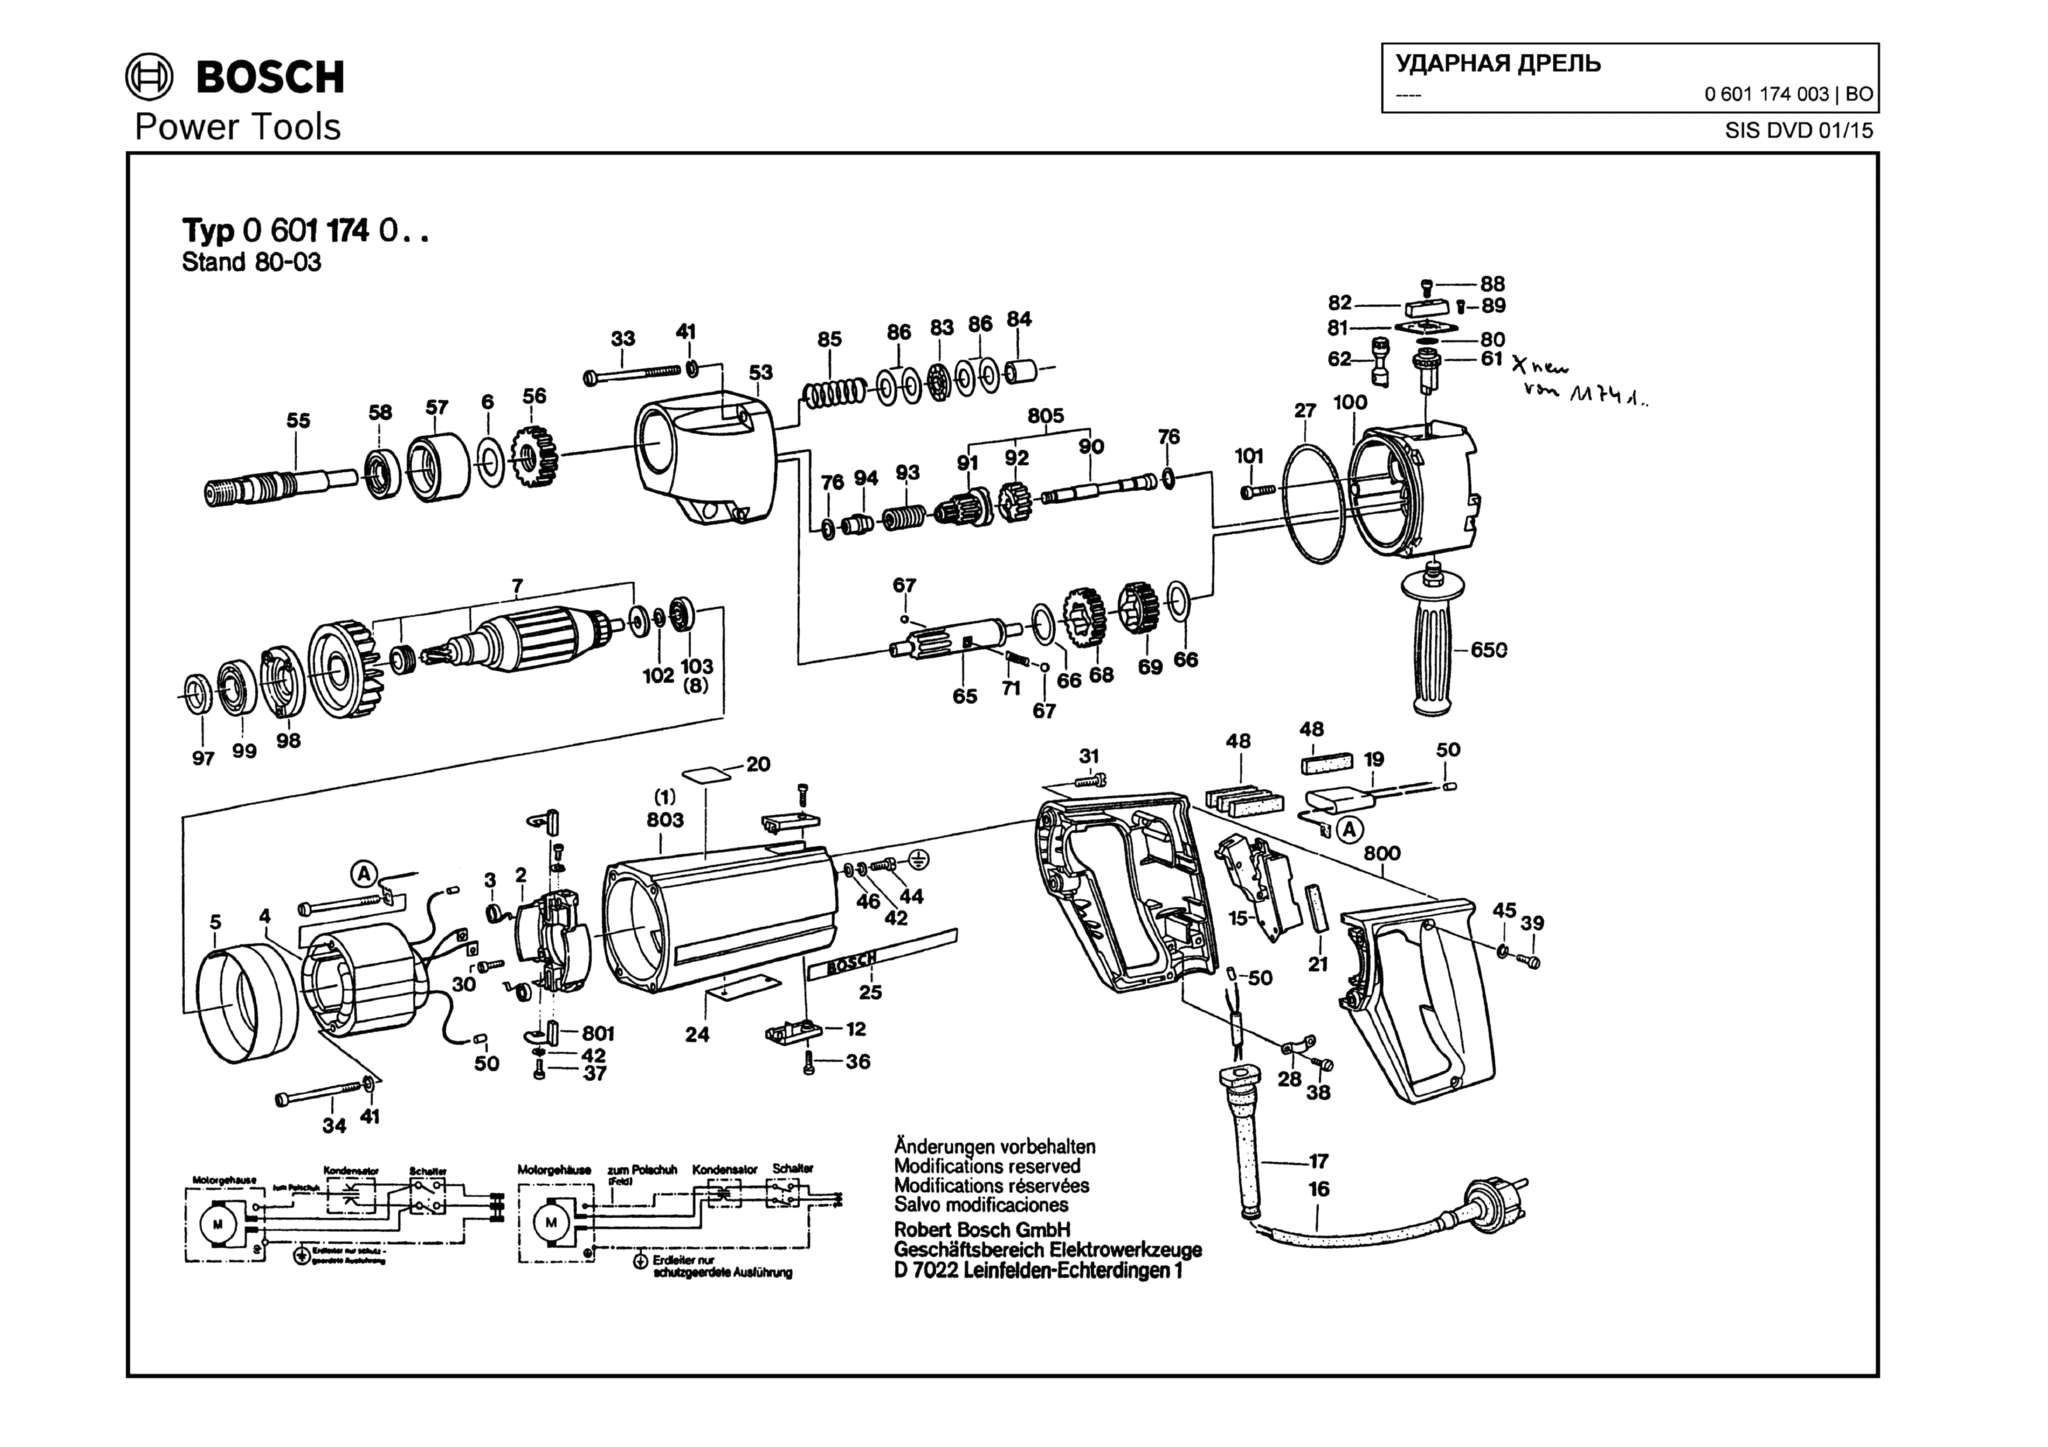 Запчасти, схема и деталировка Bosch (ТИП 0601174003)